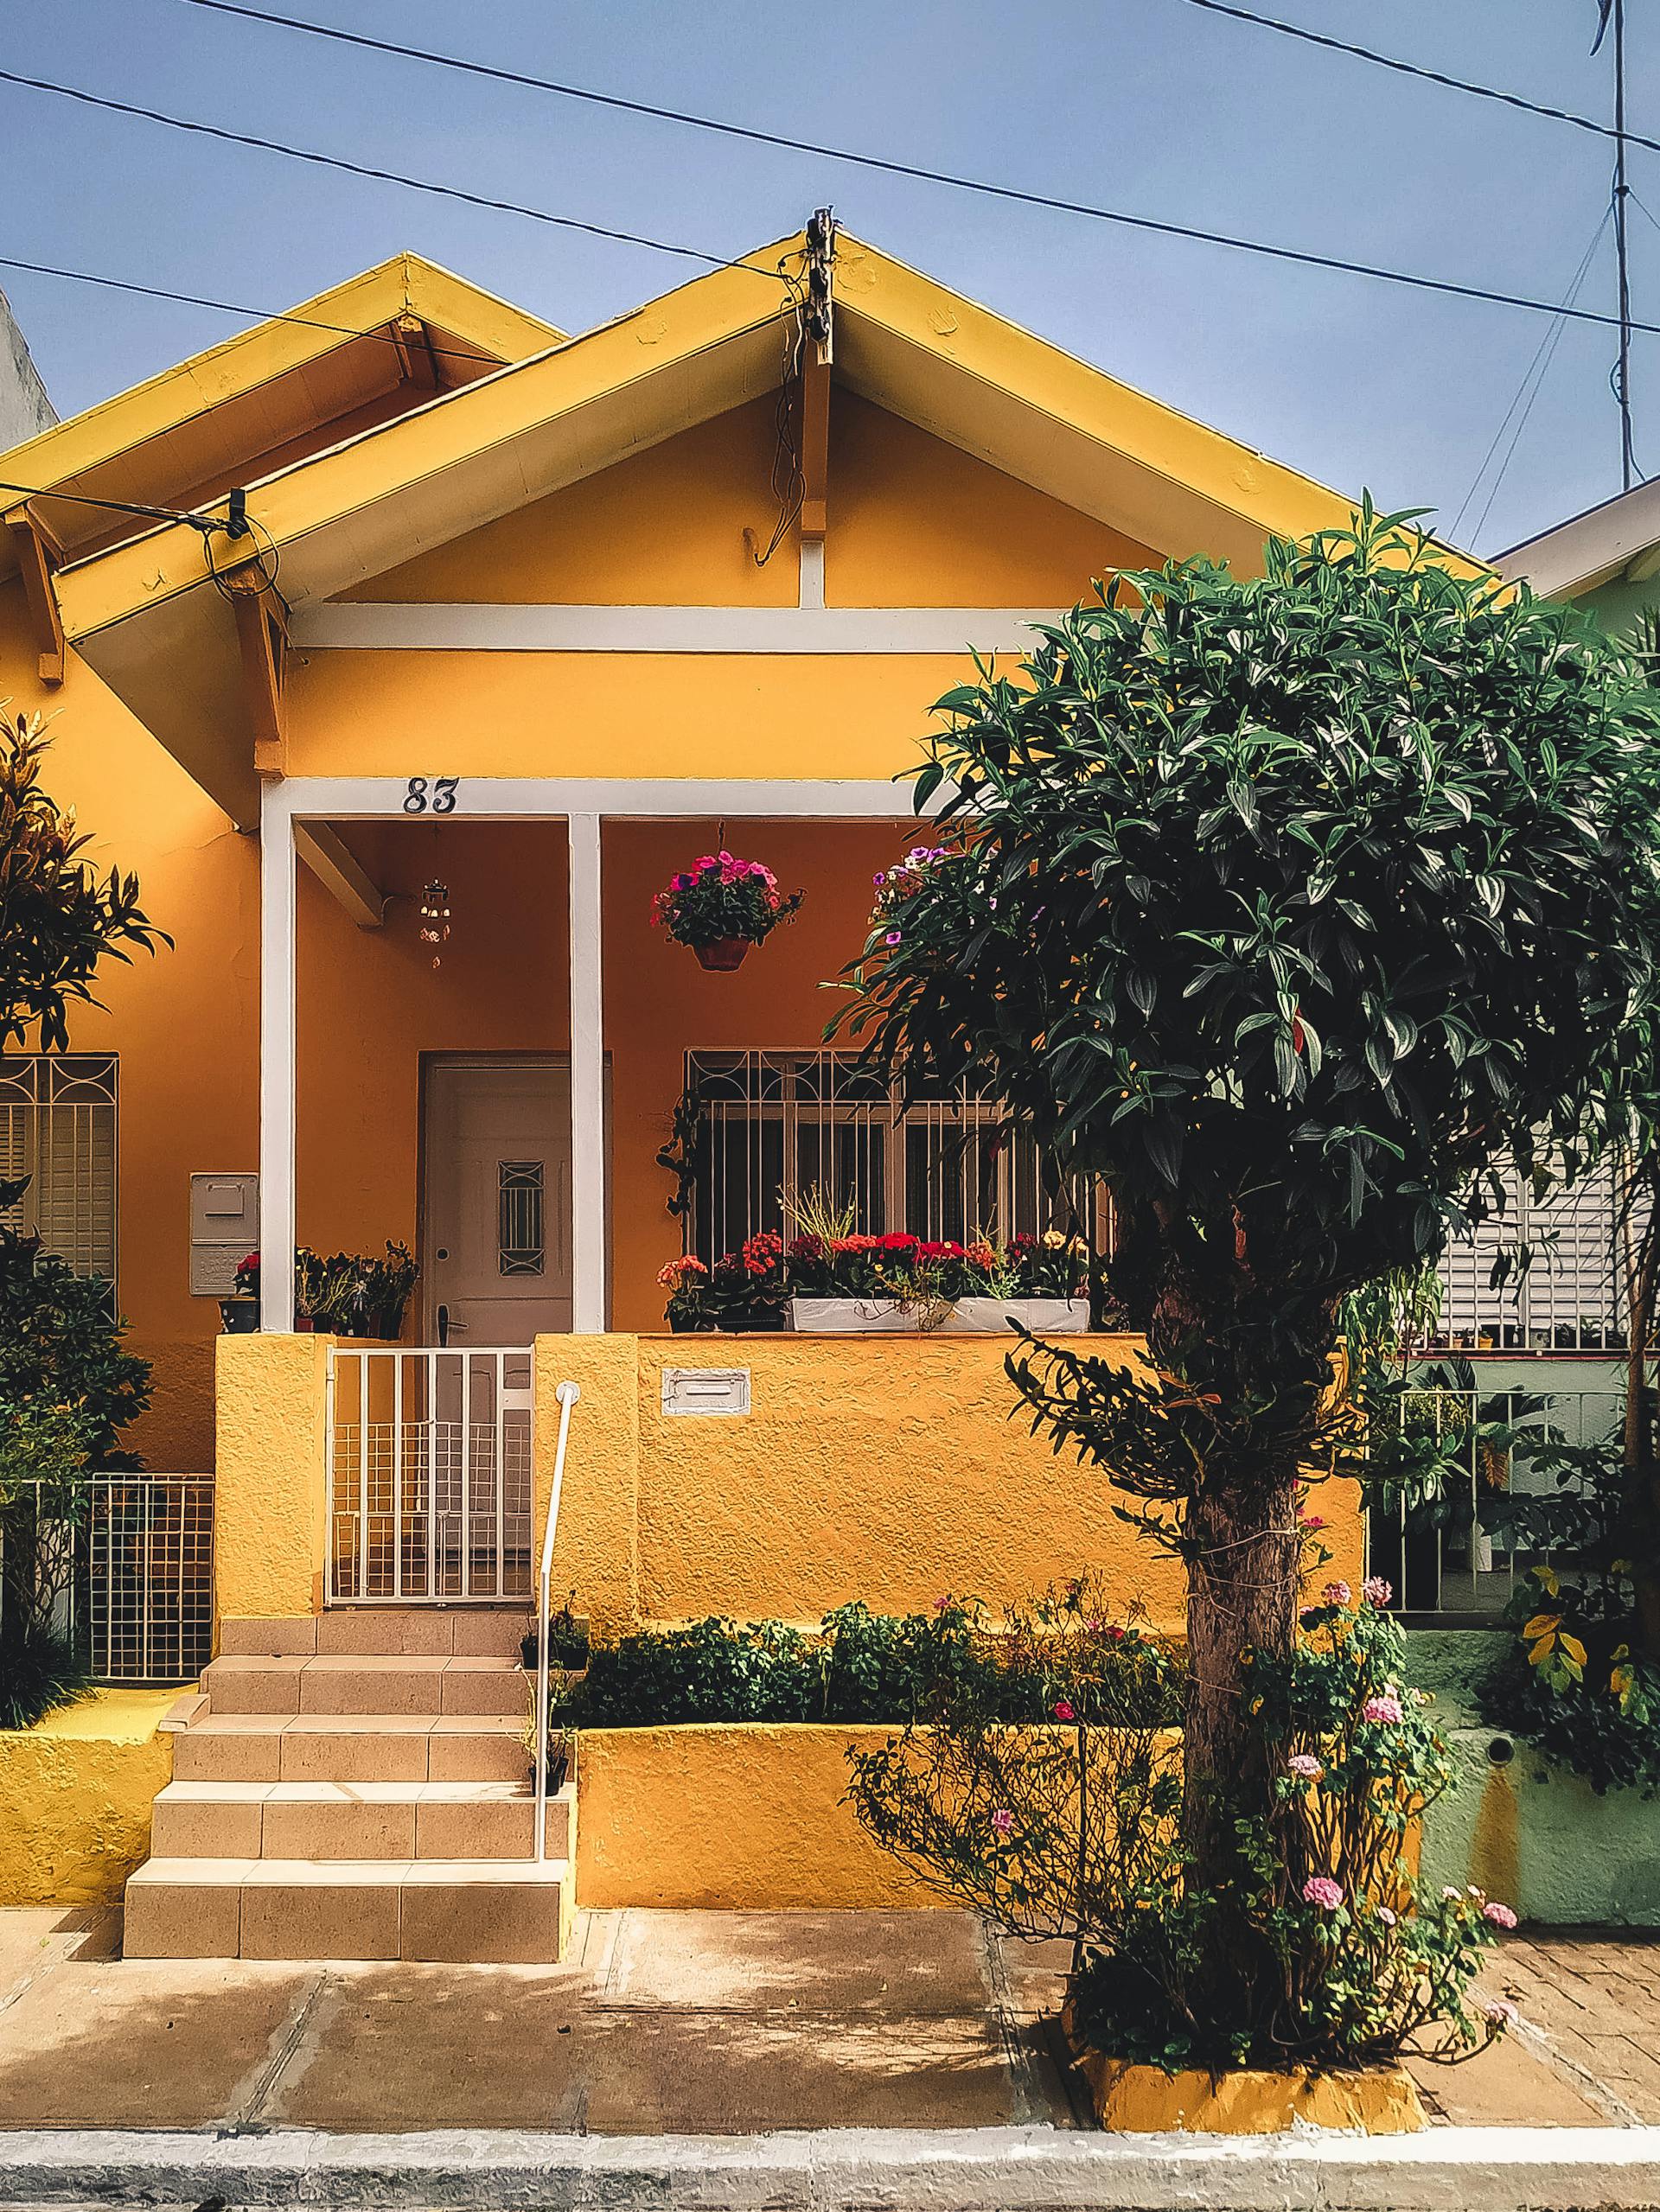 Une maison jaune avec un arbre à l'extérieur | Source : Pexels